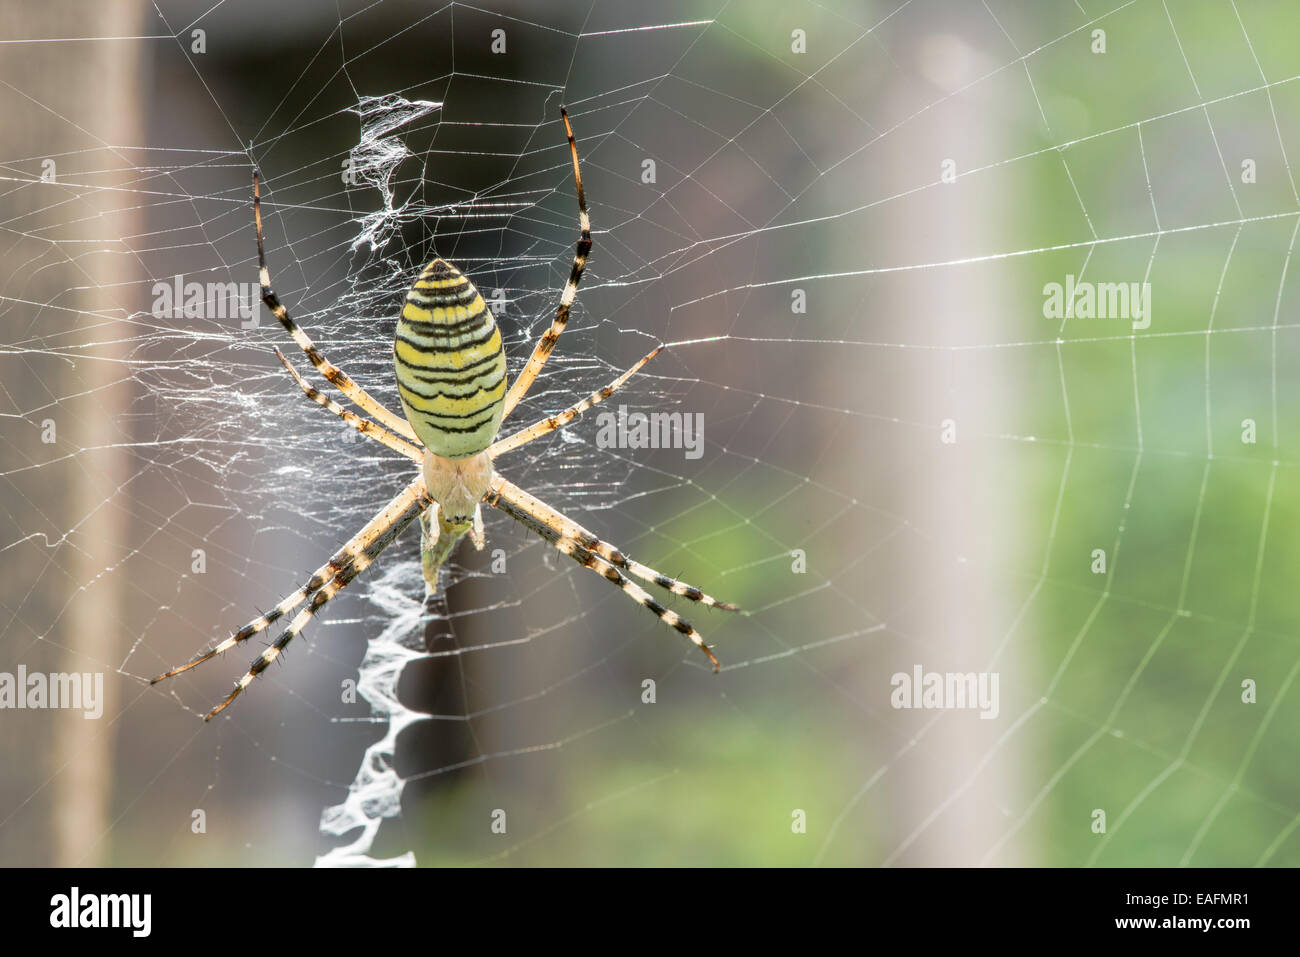 Spinne in einem Garten. Grenn und gelbe Linien Spinne Stockfoto